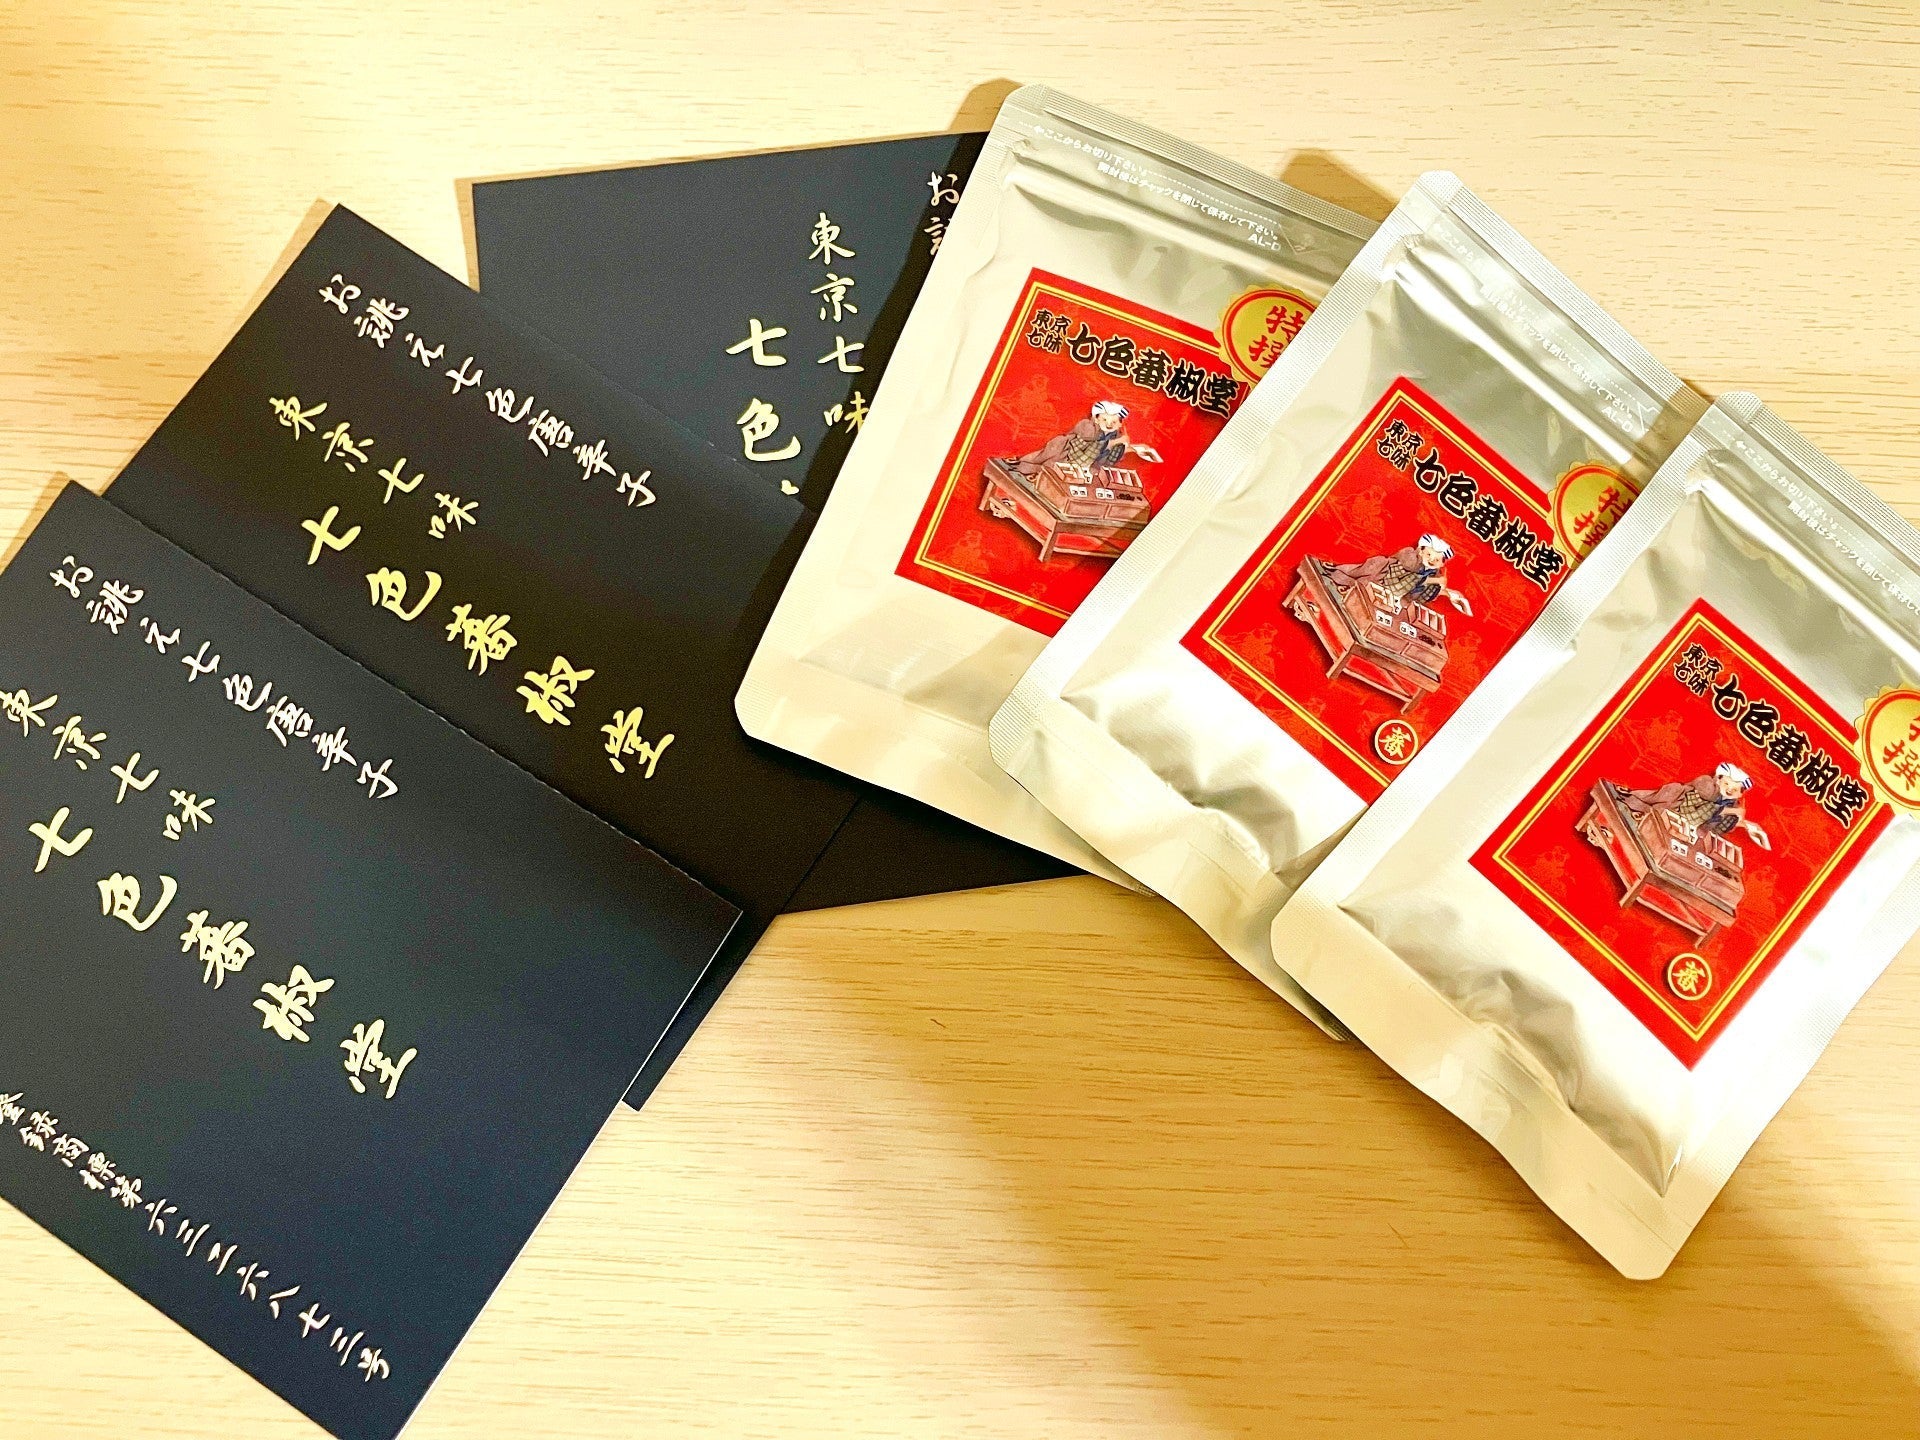 Japanese Spice Mix 'Shichimi Togarashi' 3 Packs Japanese Food Craftsman Shop